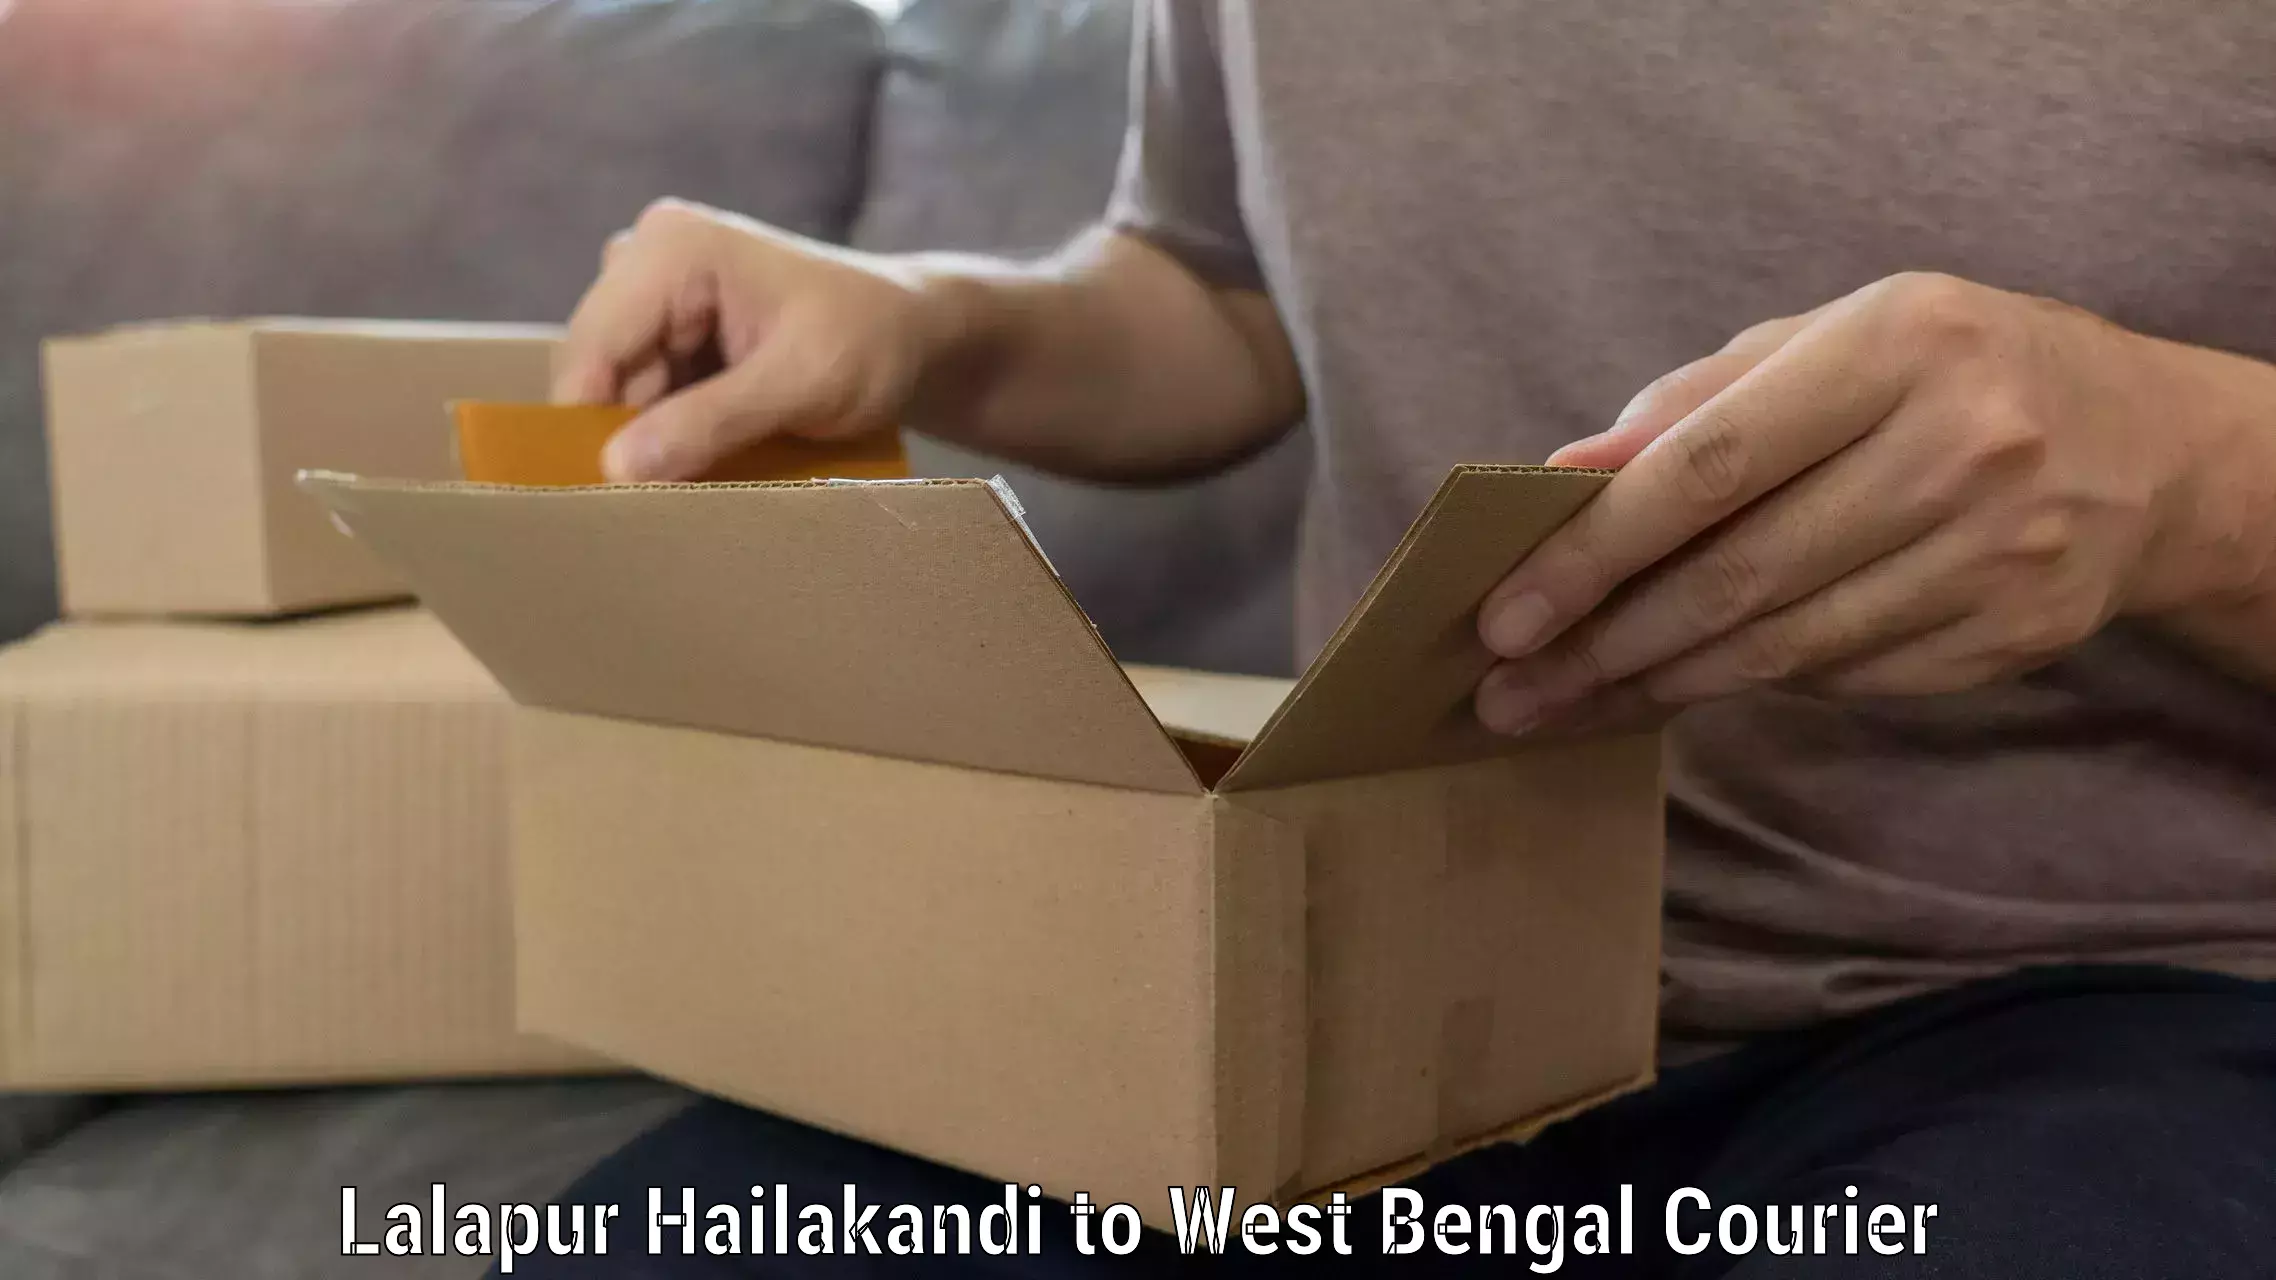 Professional movers and packers Lalapur Hailakandi to Kolkata Port